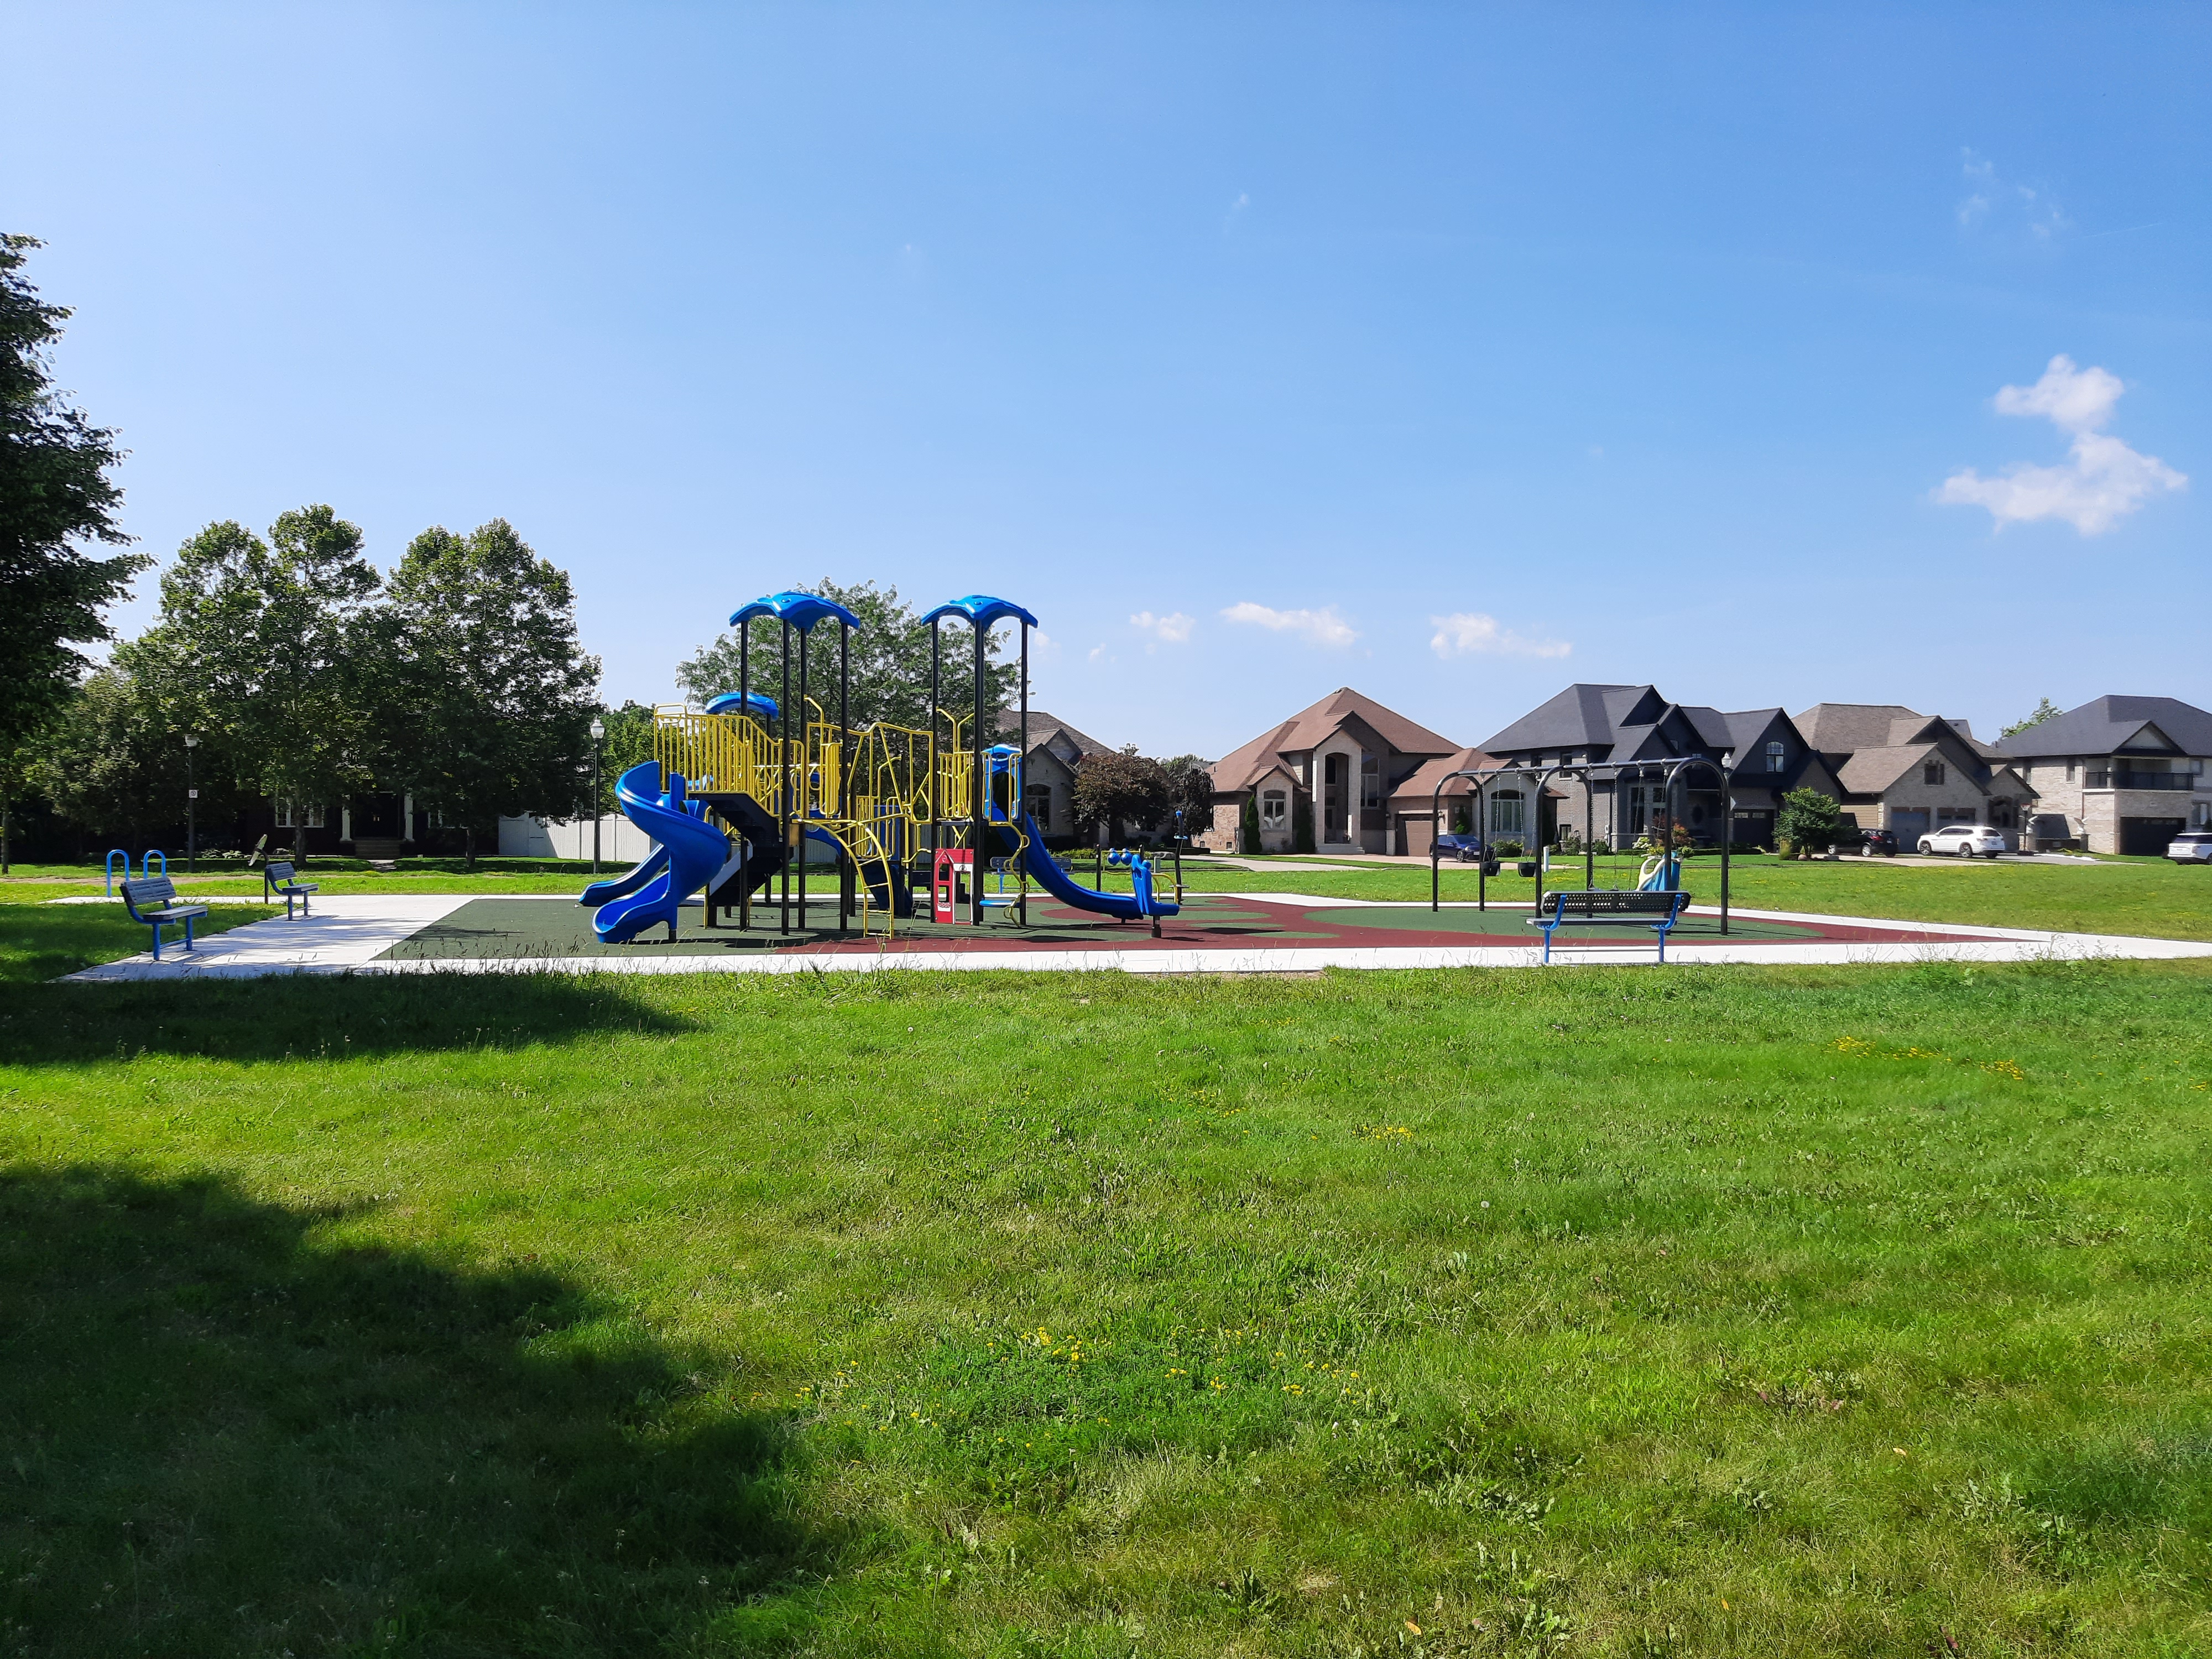 Kominar Park Playground